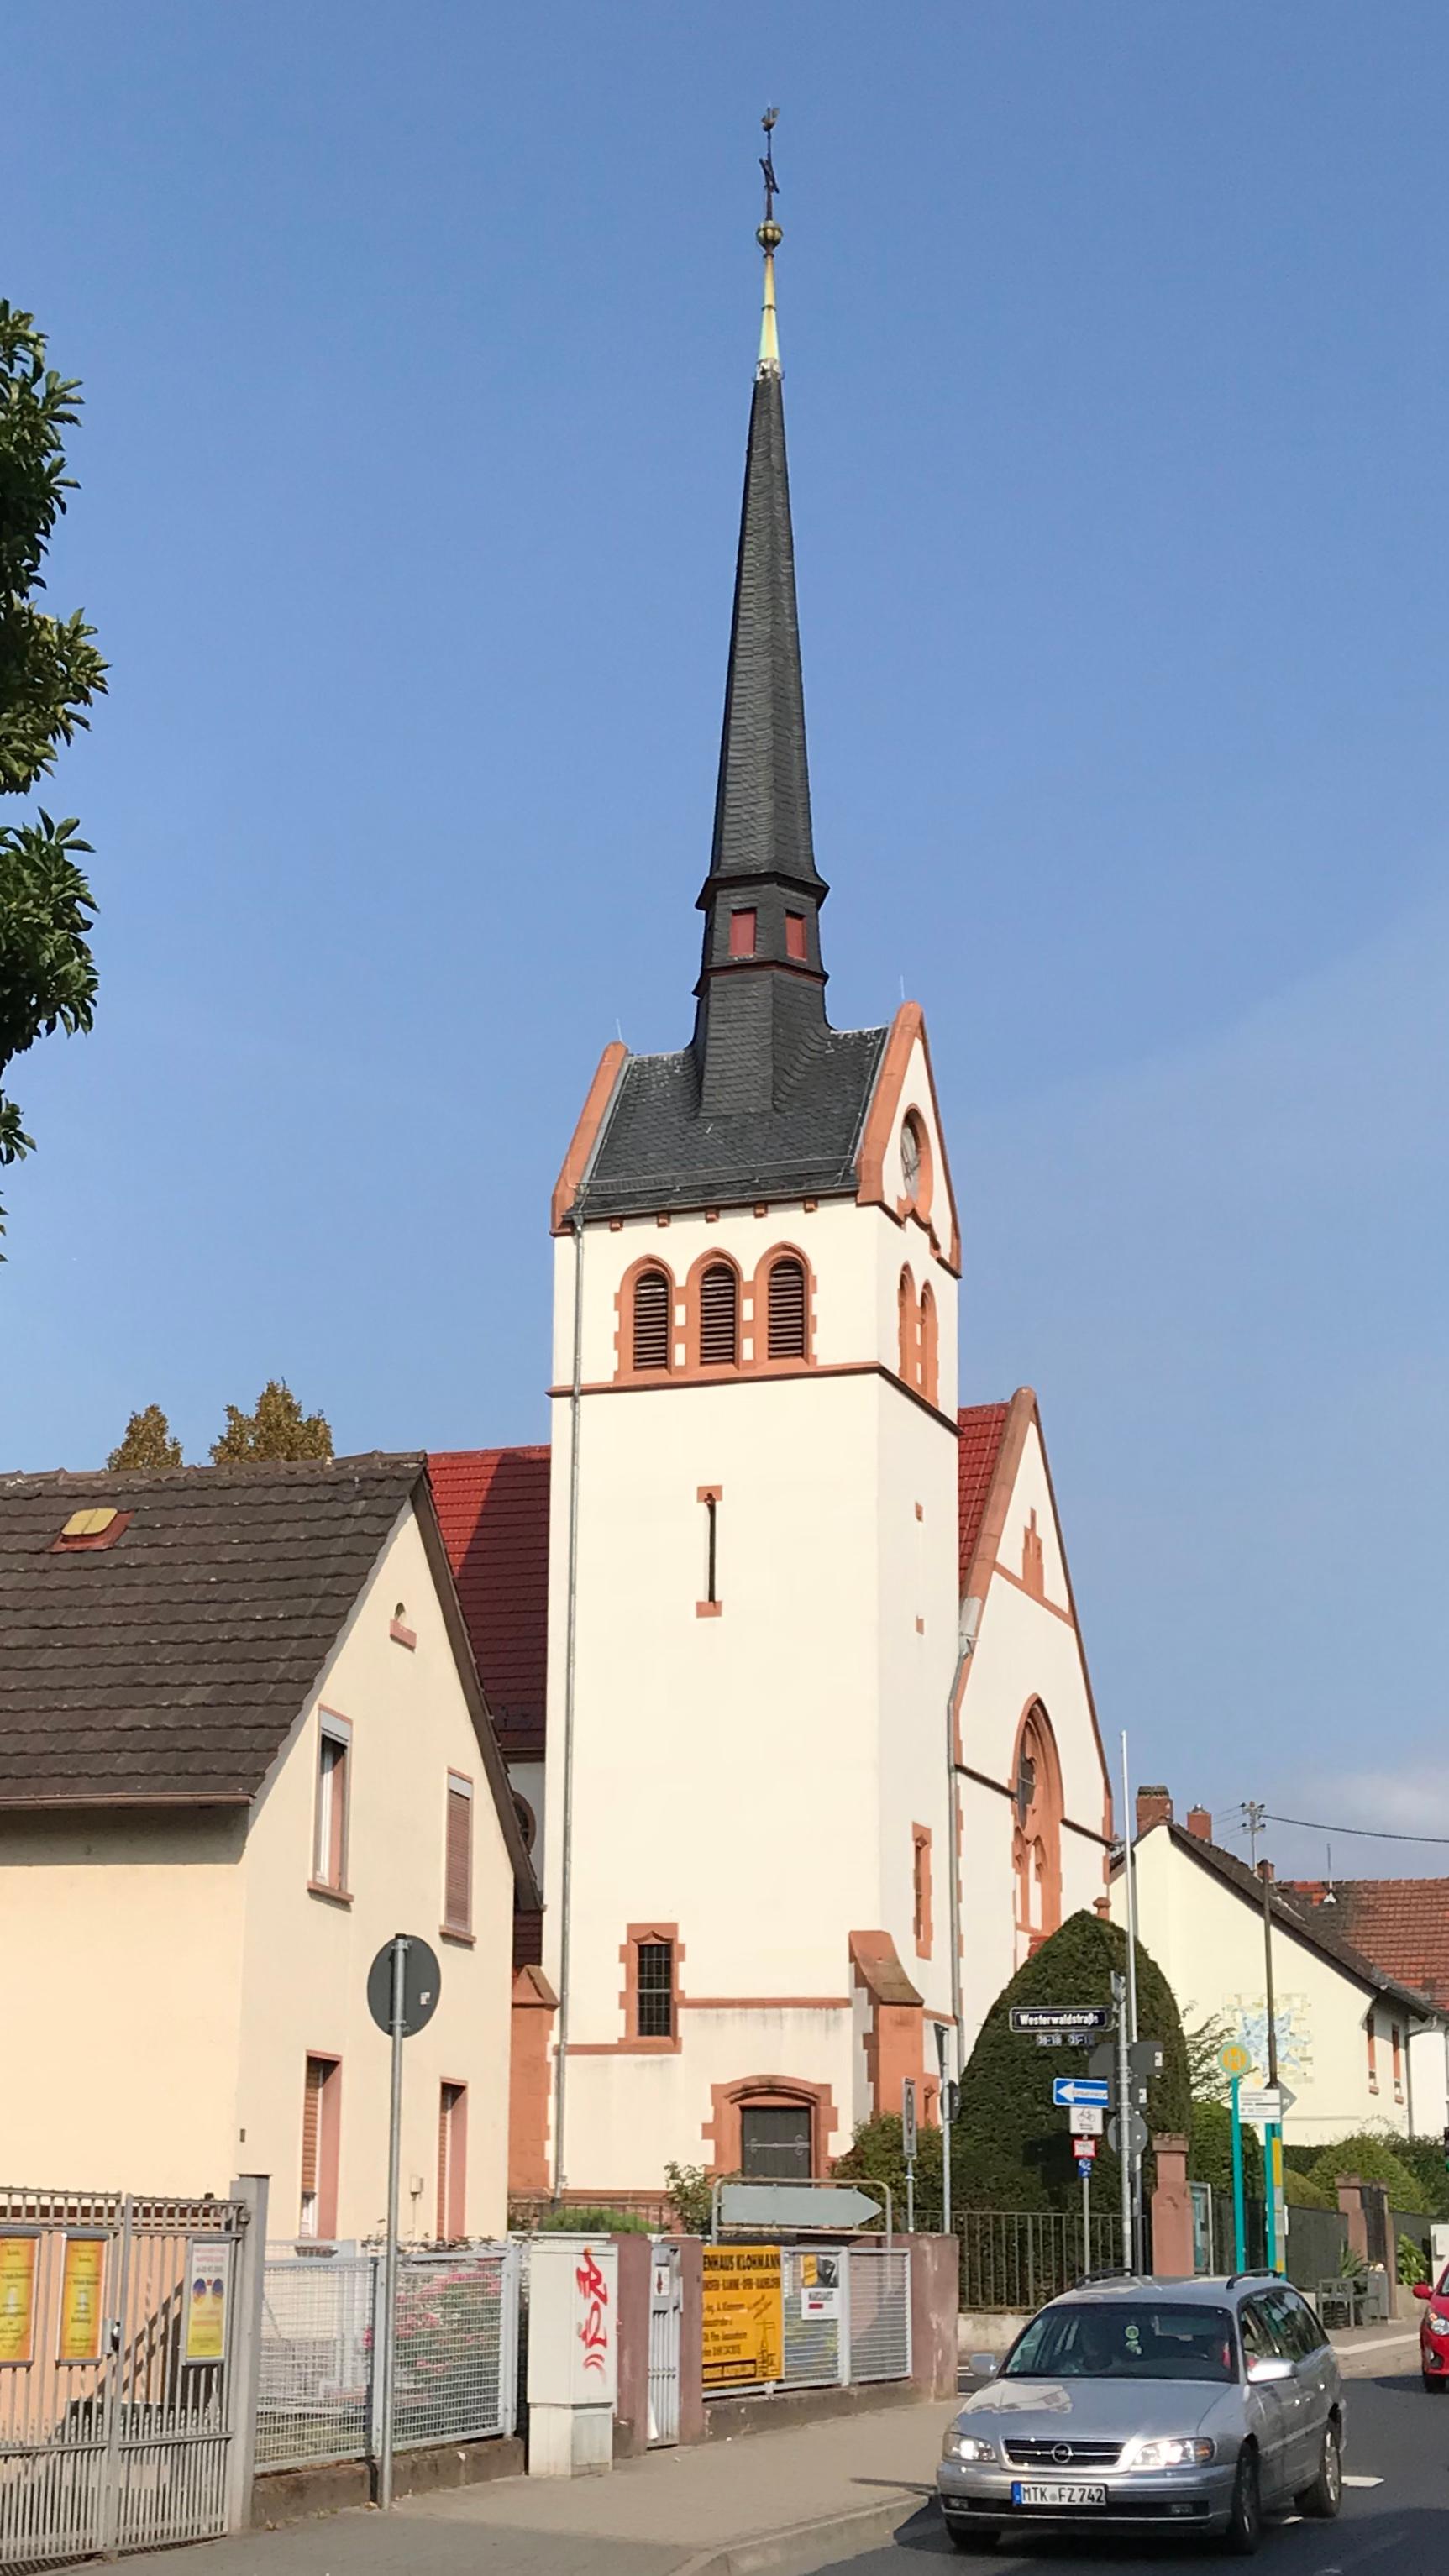 Bild 1 Evangelische Kirche Frankfurt-Sossenheim - Evangelische Regenbogengemeinde Frankfurt/Main-Sossenheim in Frankfurt/Main